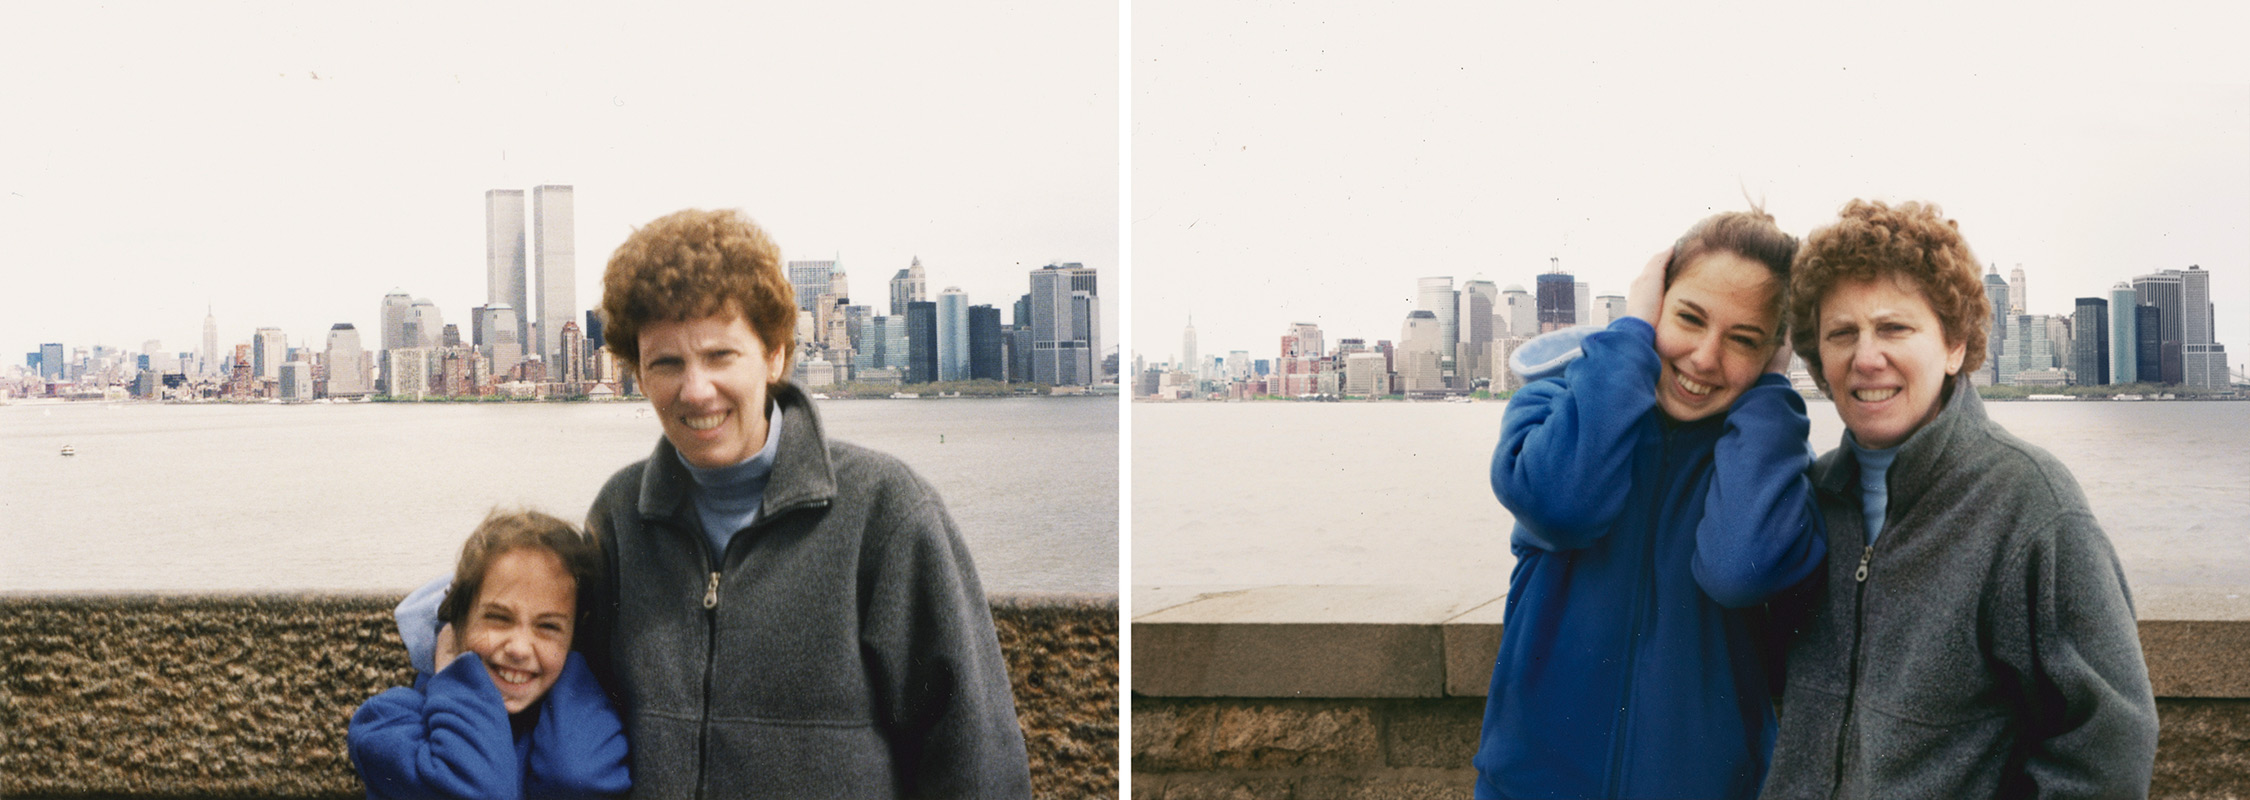 Энн и Мэдлин 2001-2011 Эллис-Айленд, Нью-Йорк